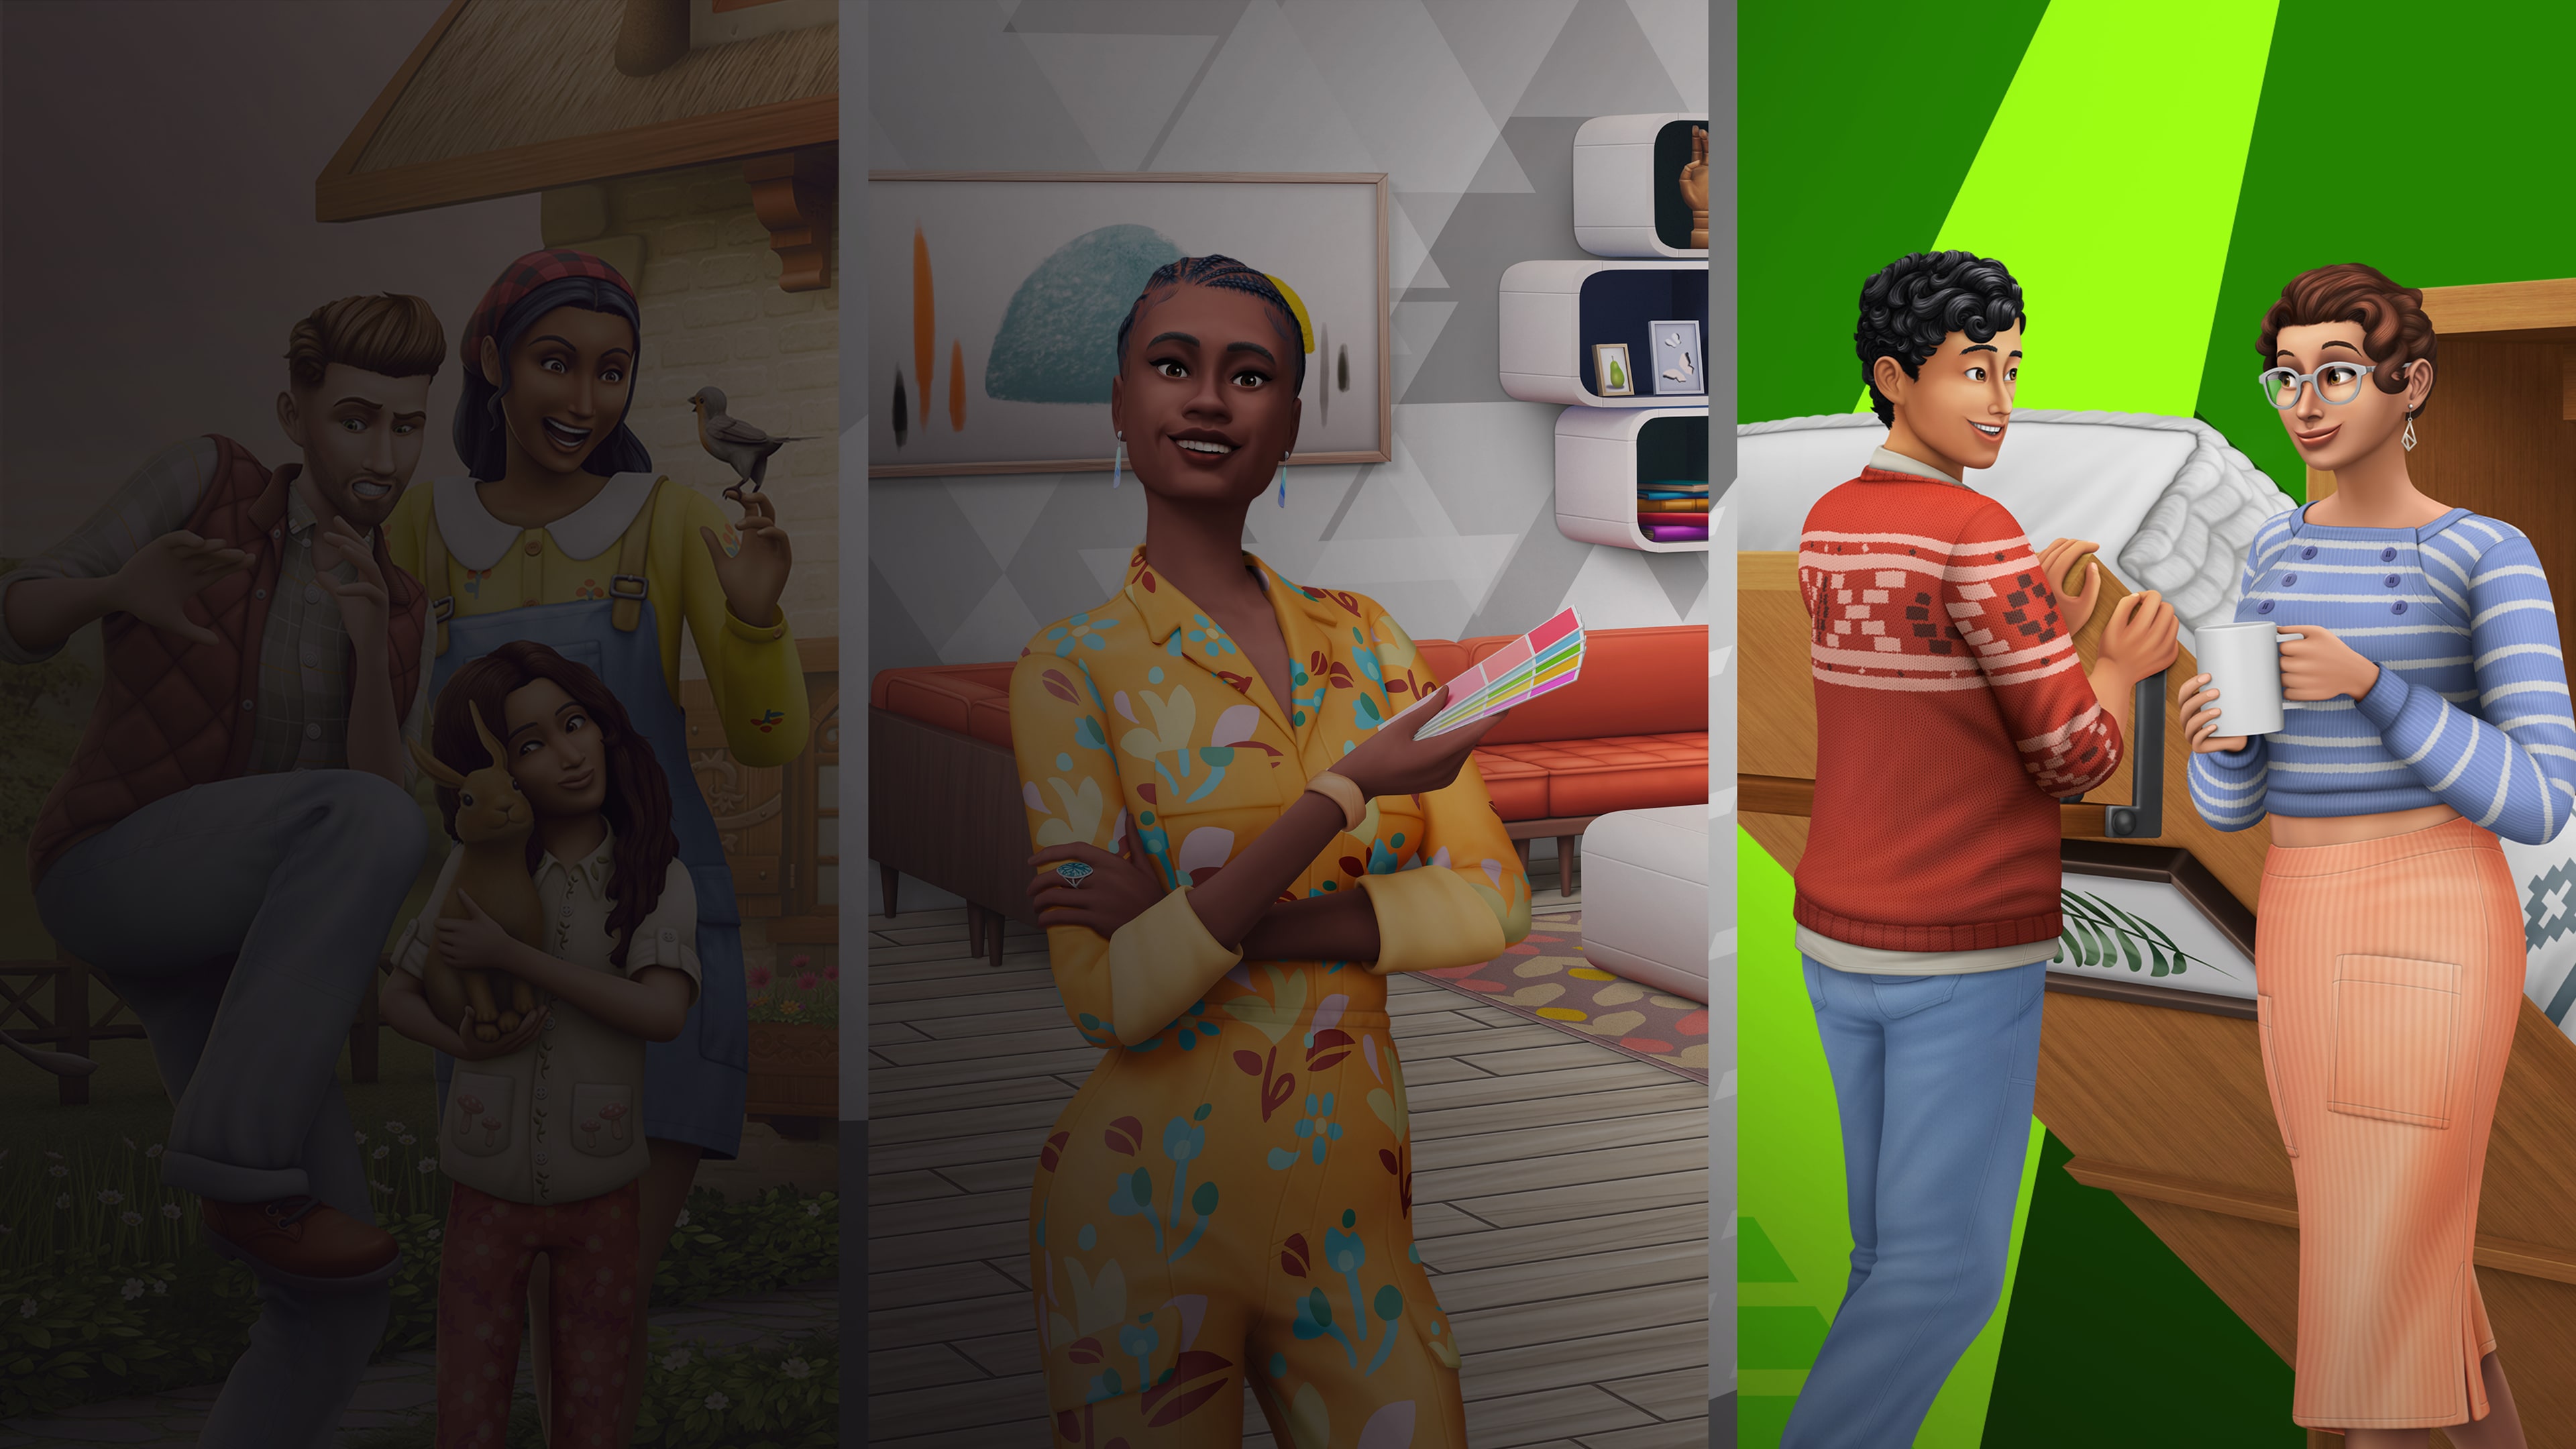 The Sims™ 4 Bundle Um Sonho de Decoração